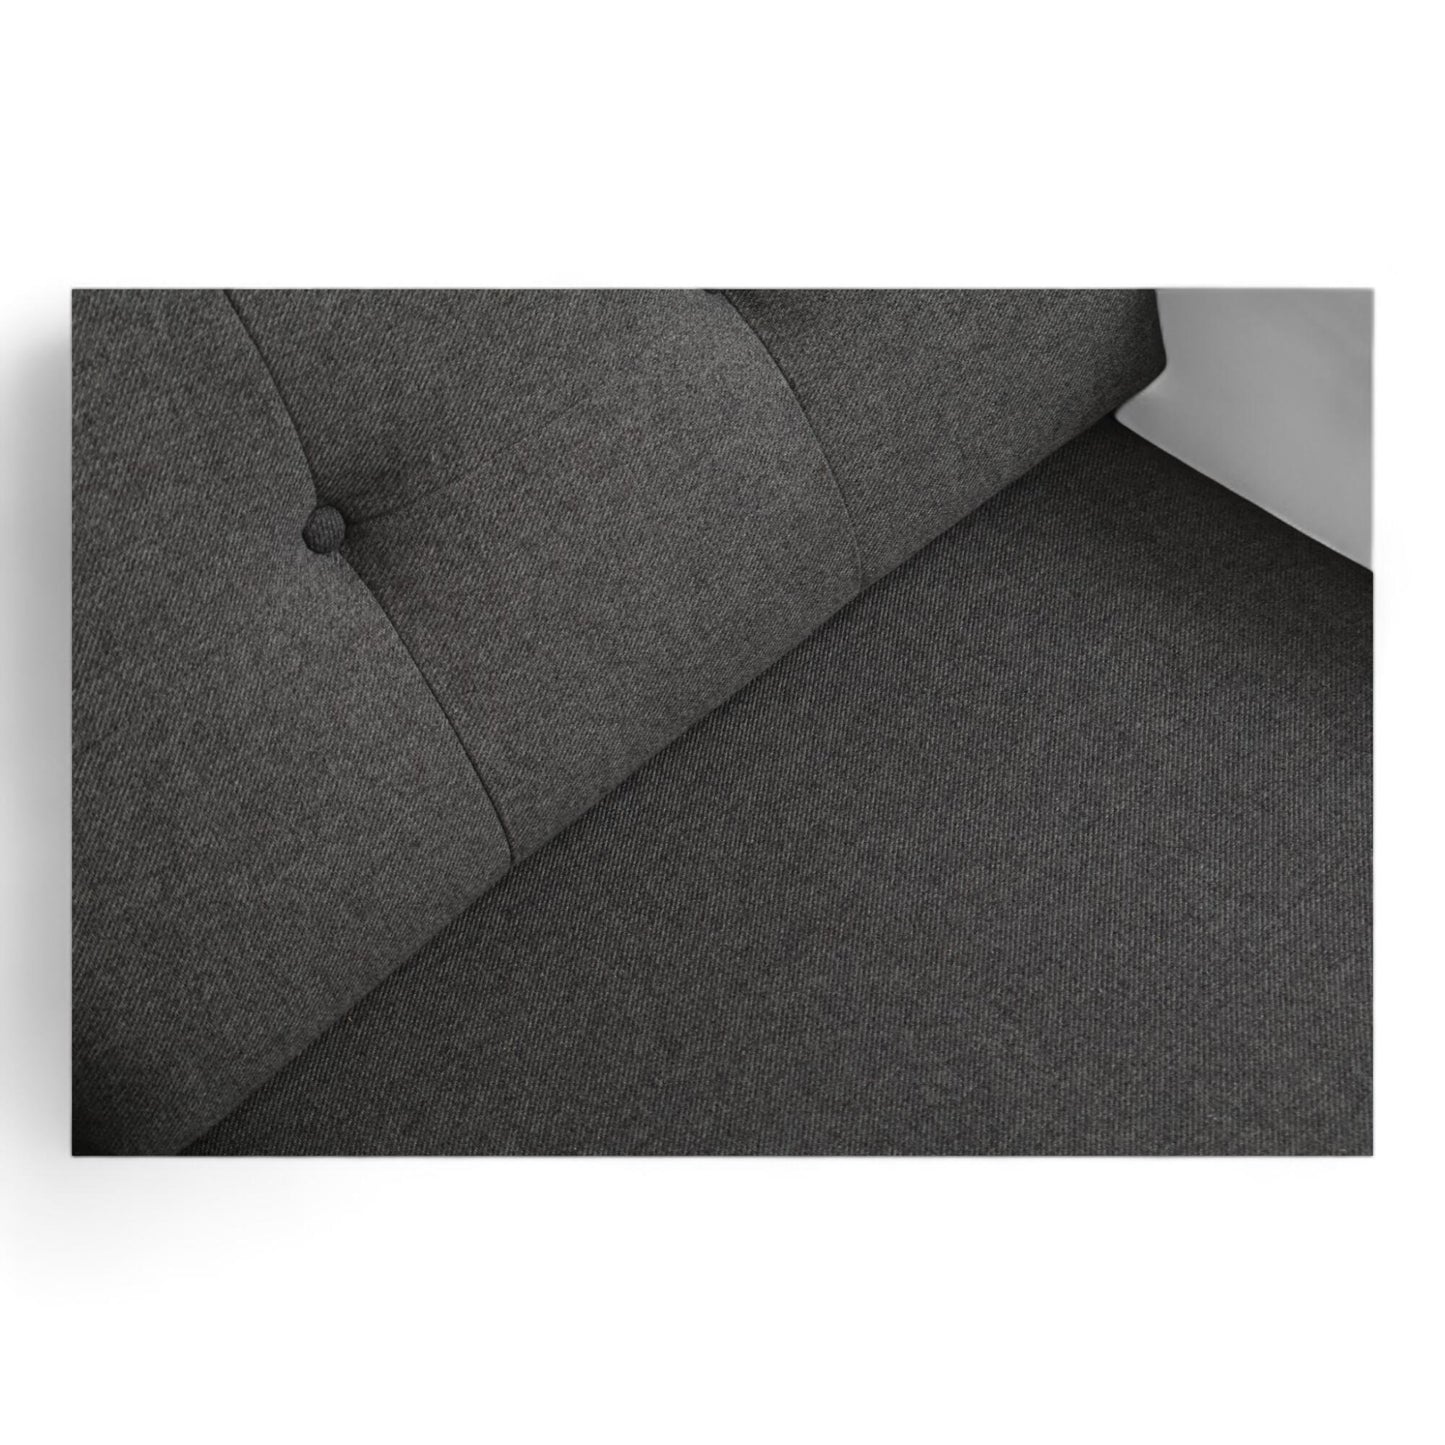 Nyrenset | Mørk grå Sofa Company Vera lenestol